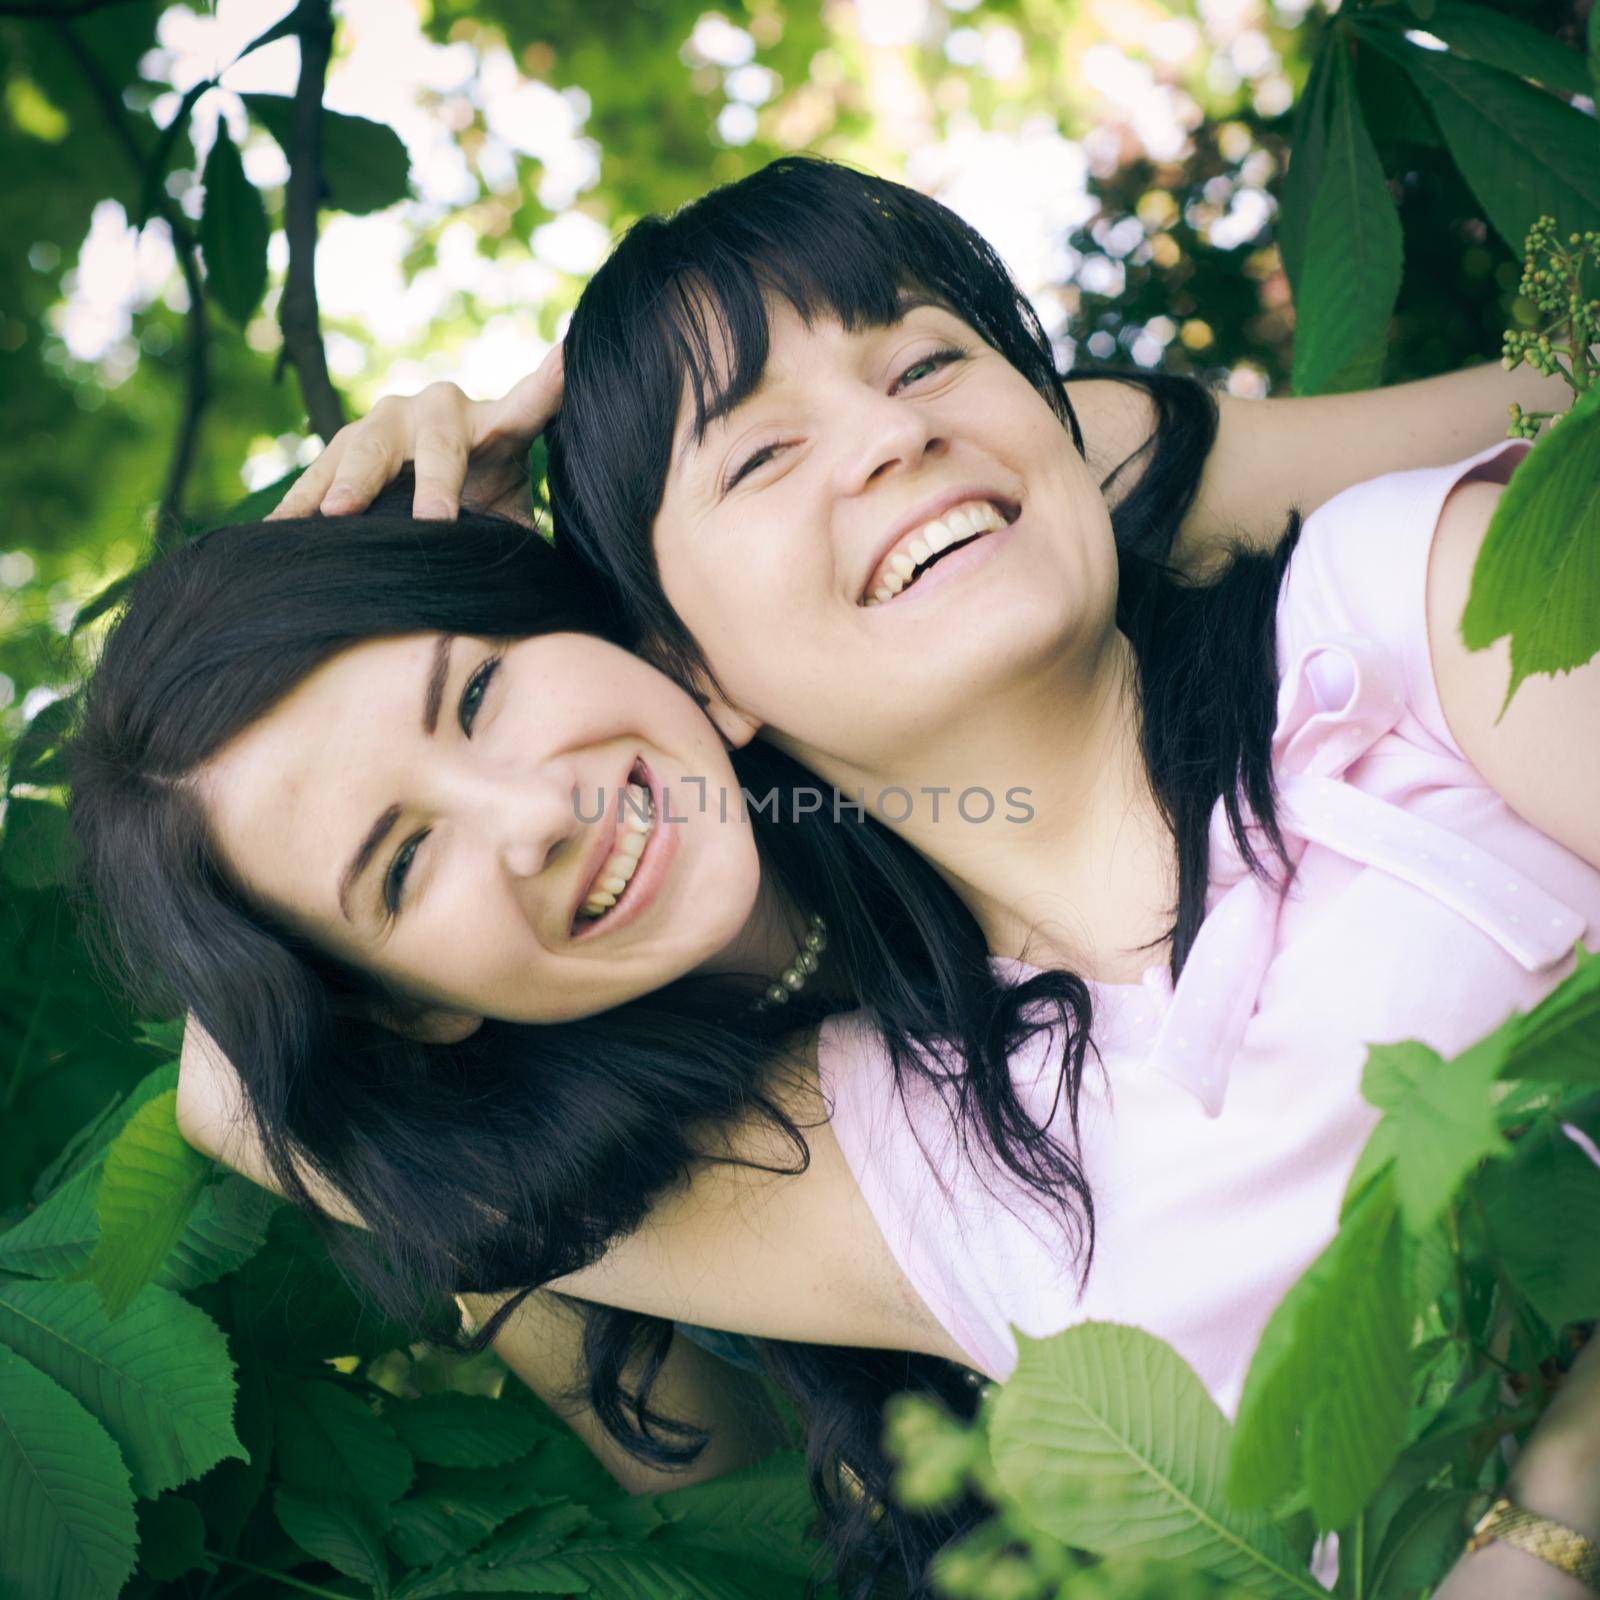 Two sisters fun outdoor. Instagram toned selfie